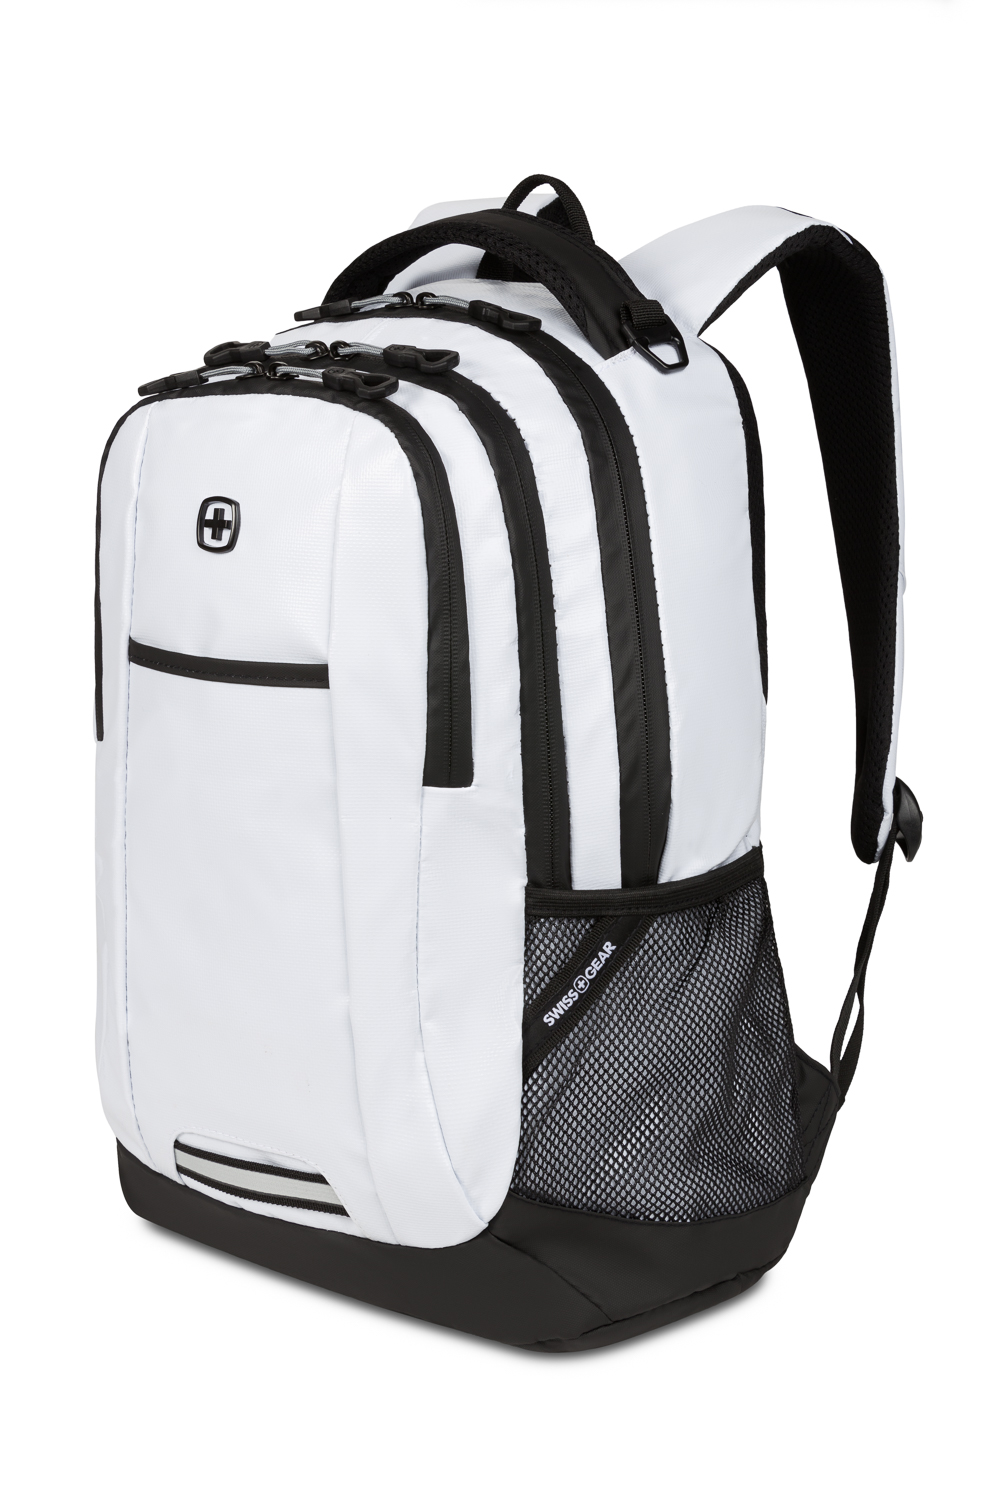 SWISSGEAR 5505 Laptop Backpack Black 